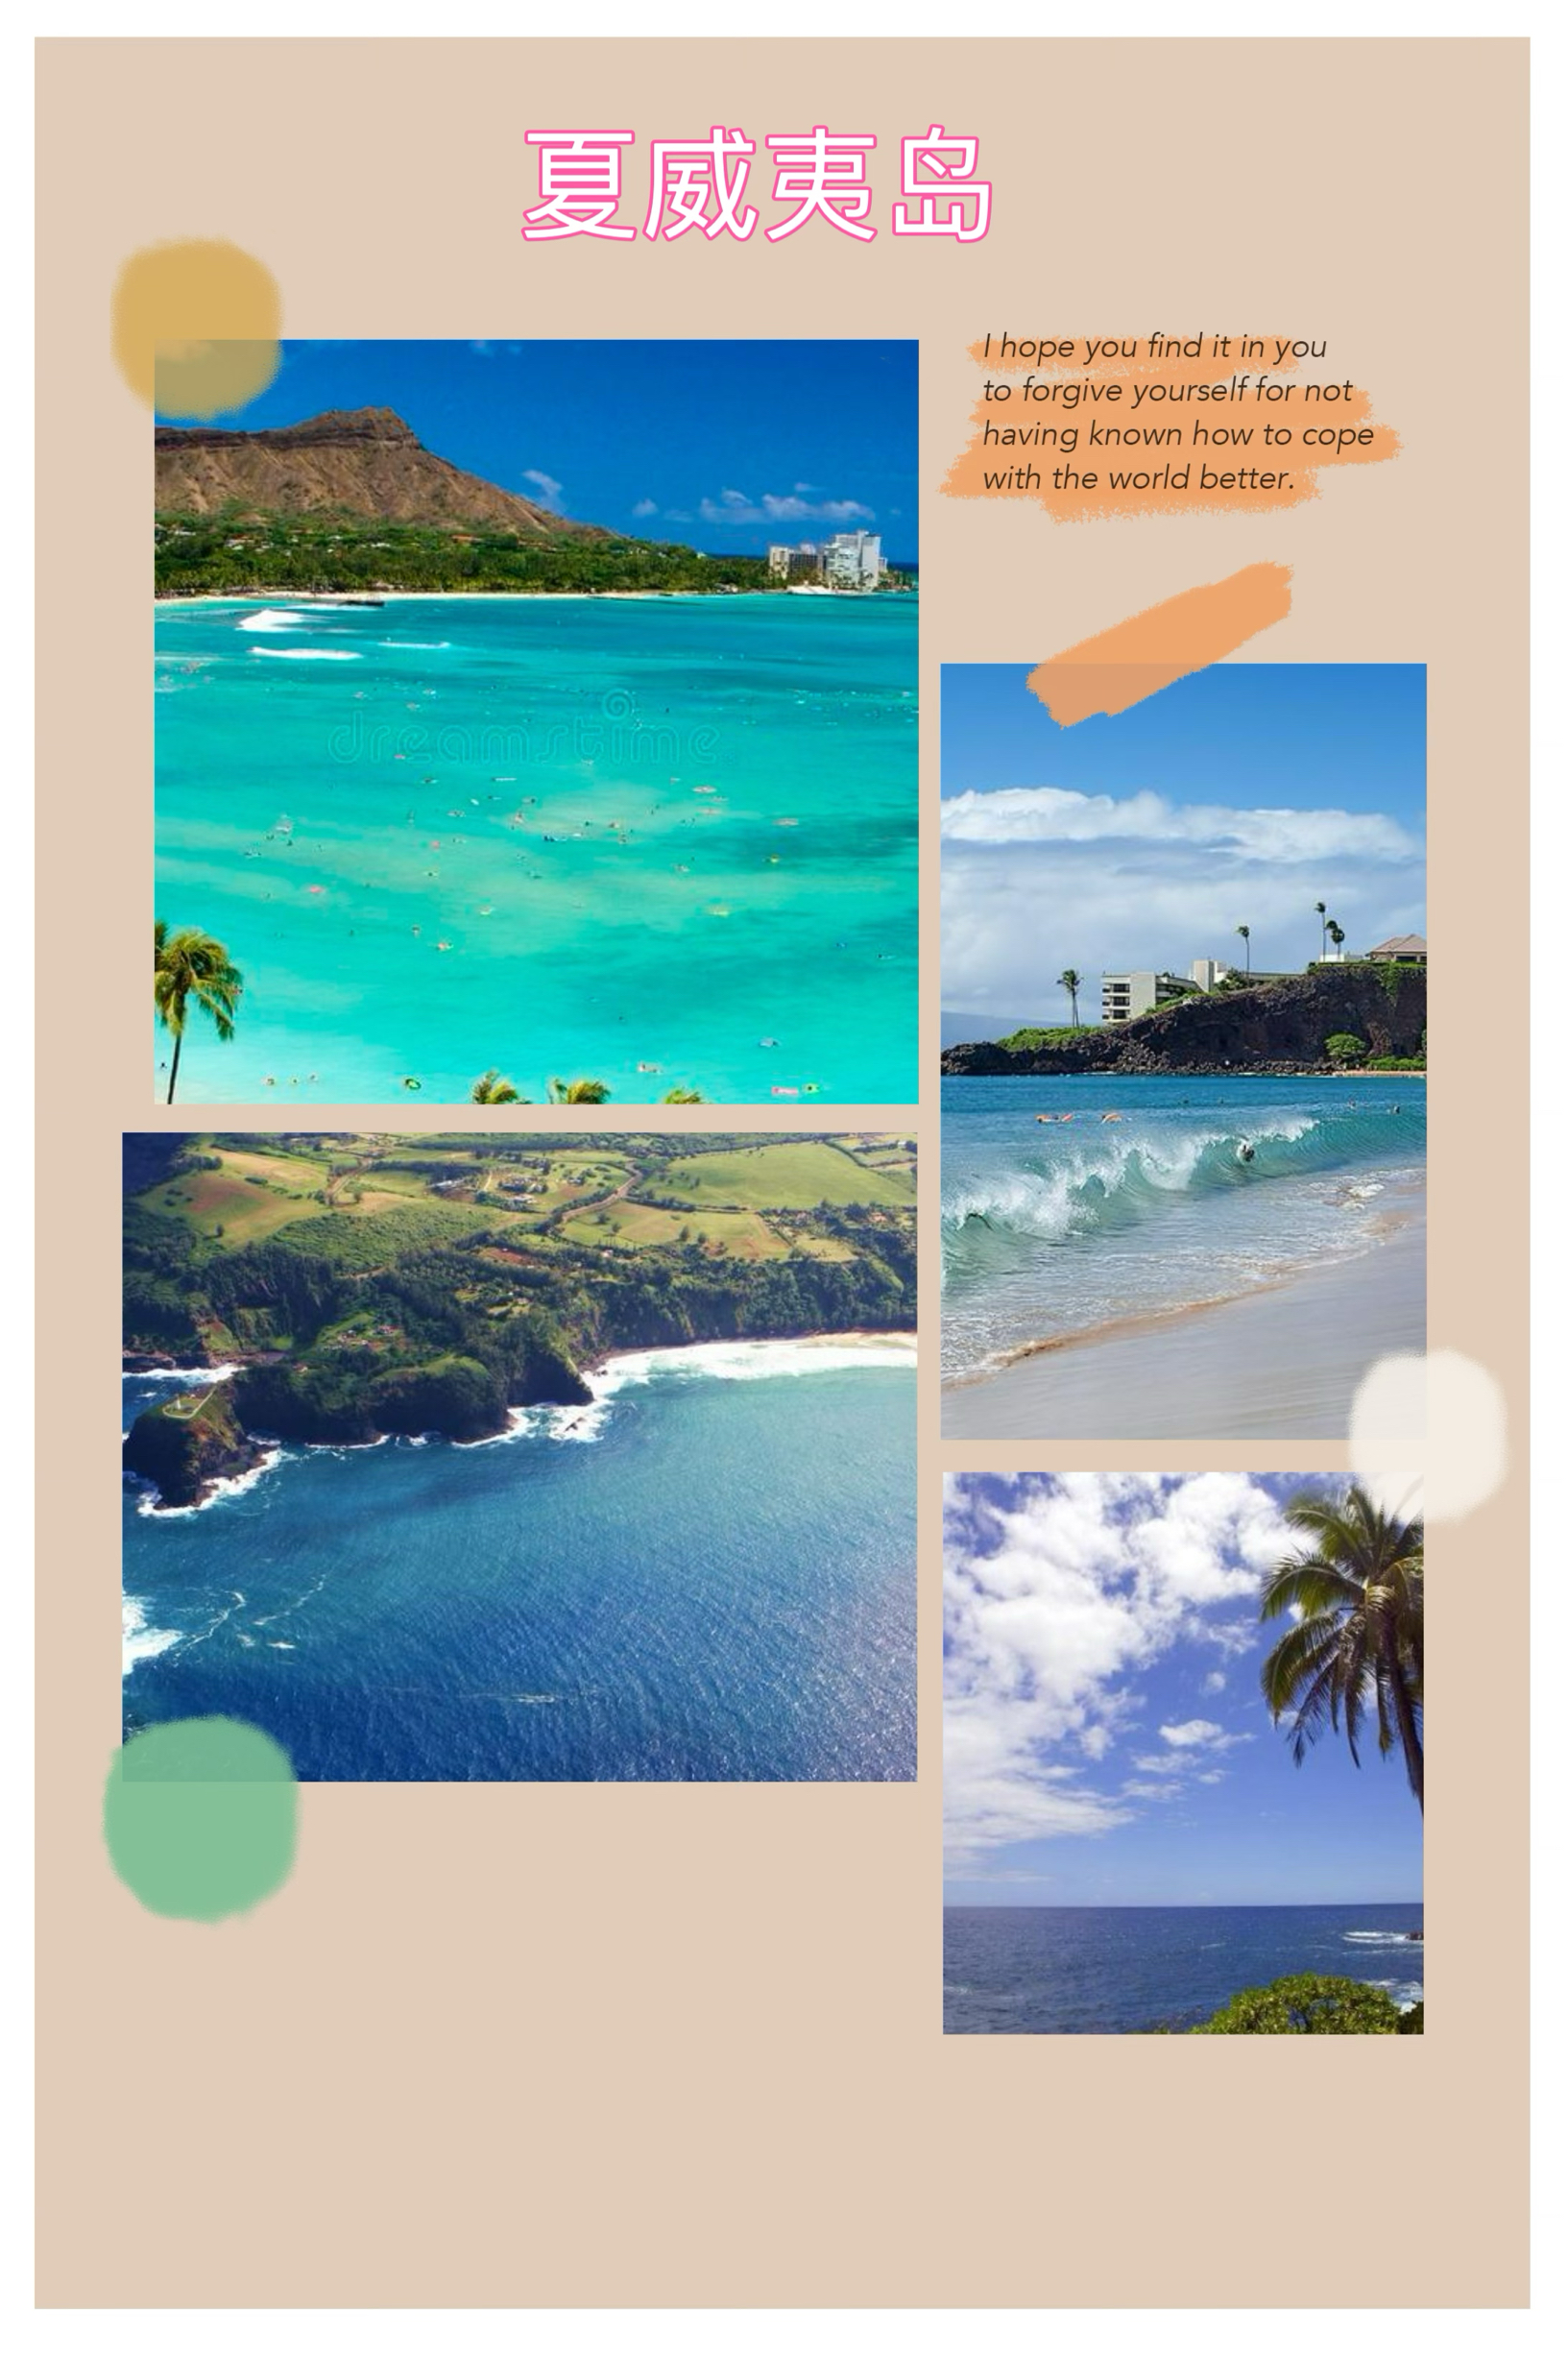 夏威夷岛的游玩日程表